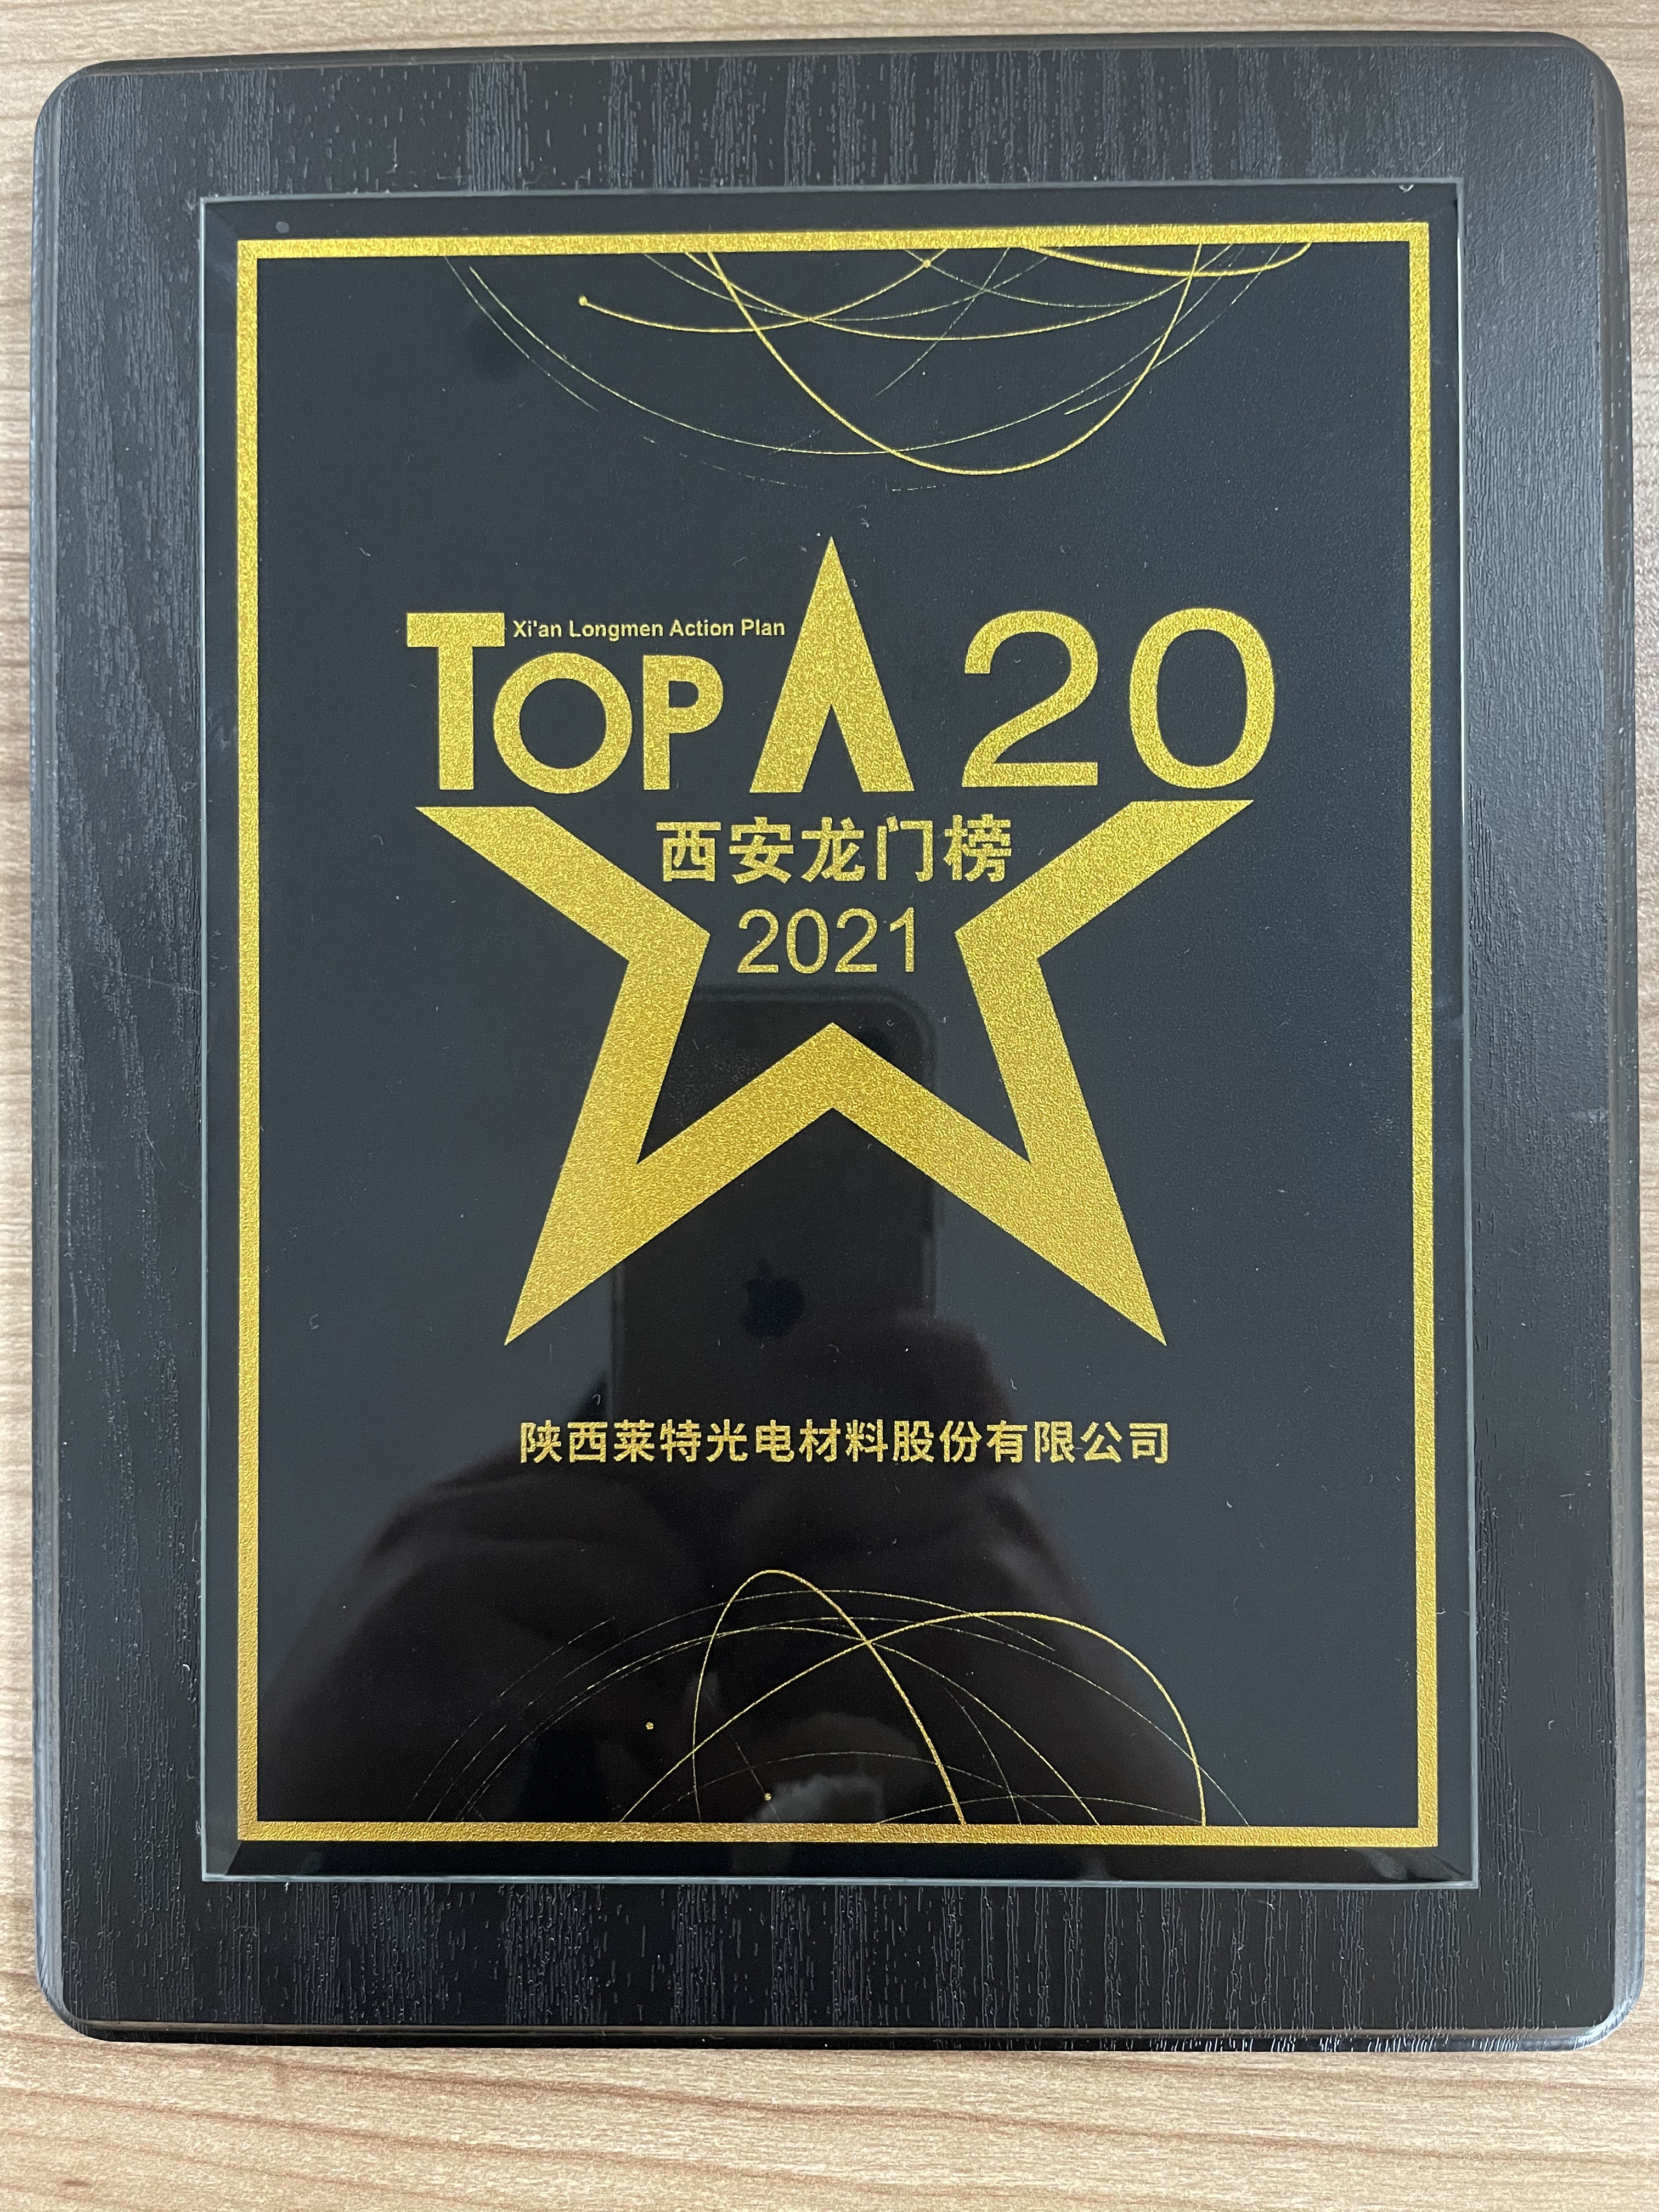 2021年“西安龙门榜”TOP20